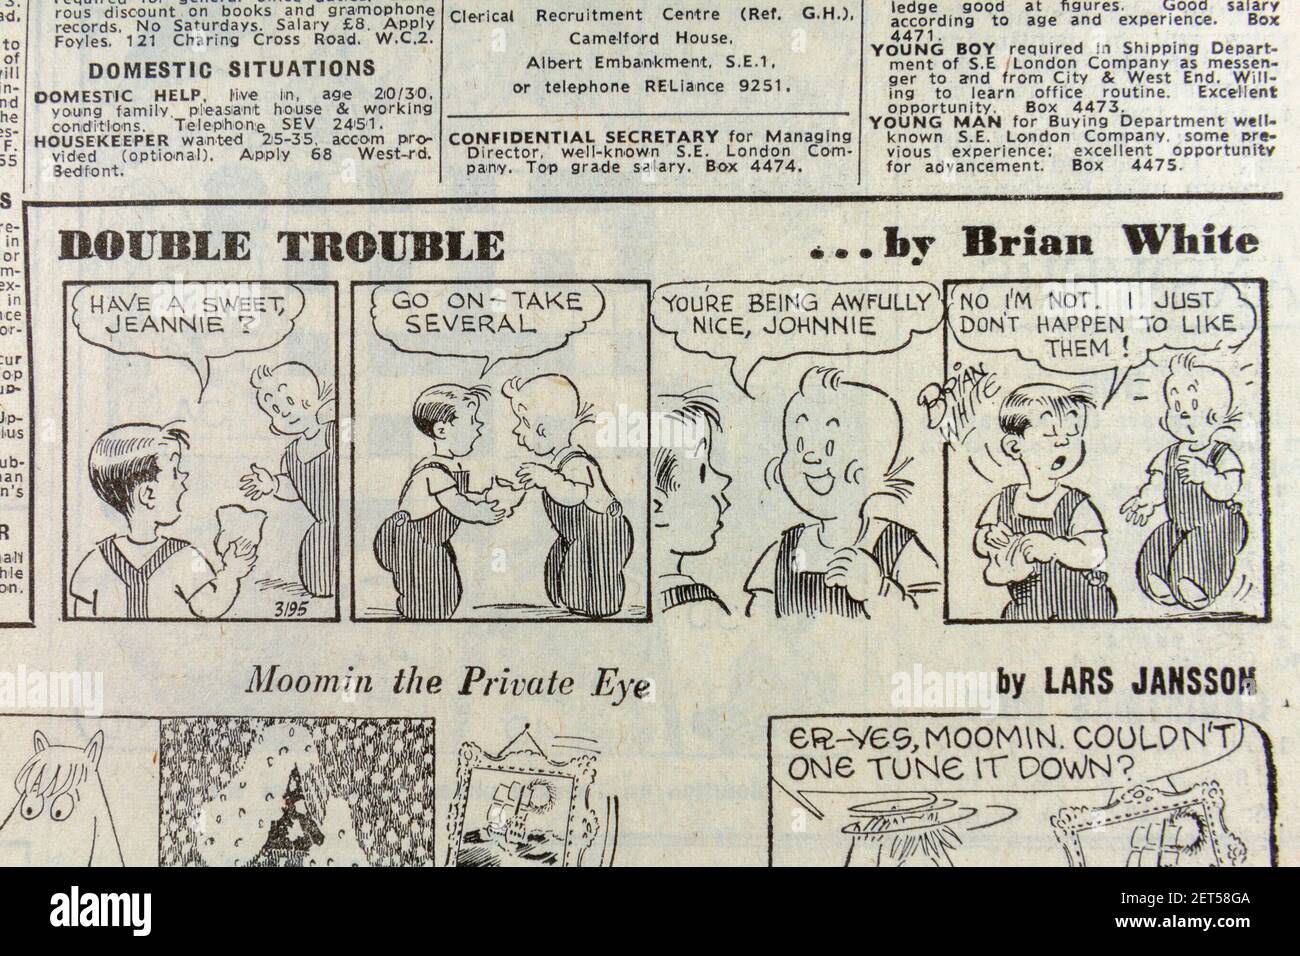 'Double Trouble' Comic von Brian White in der Zeitung Evening News (Freitag, 24th. Dezember 1965), London, Großbritannien. Stockfoto